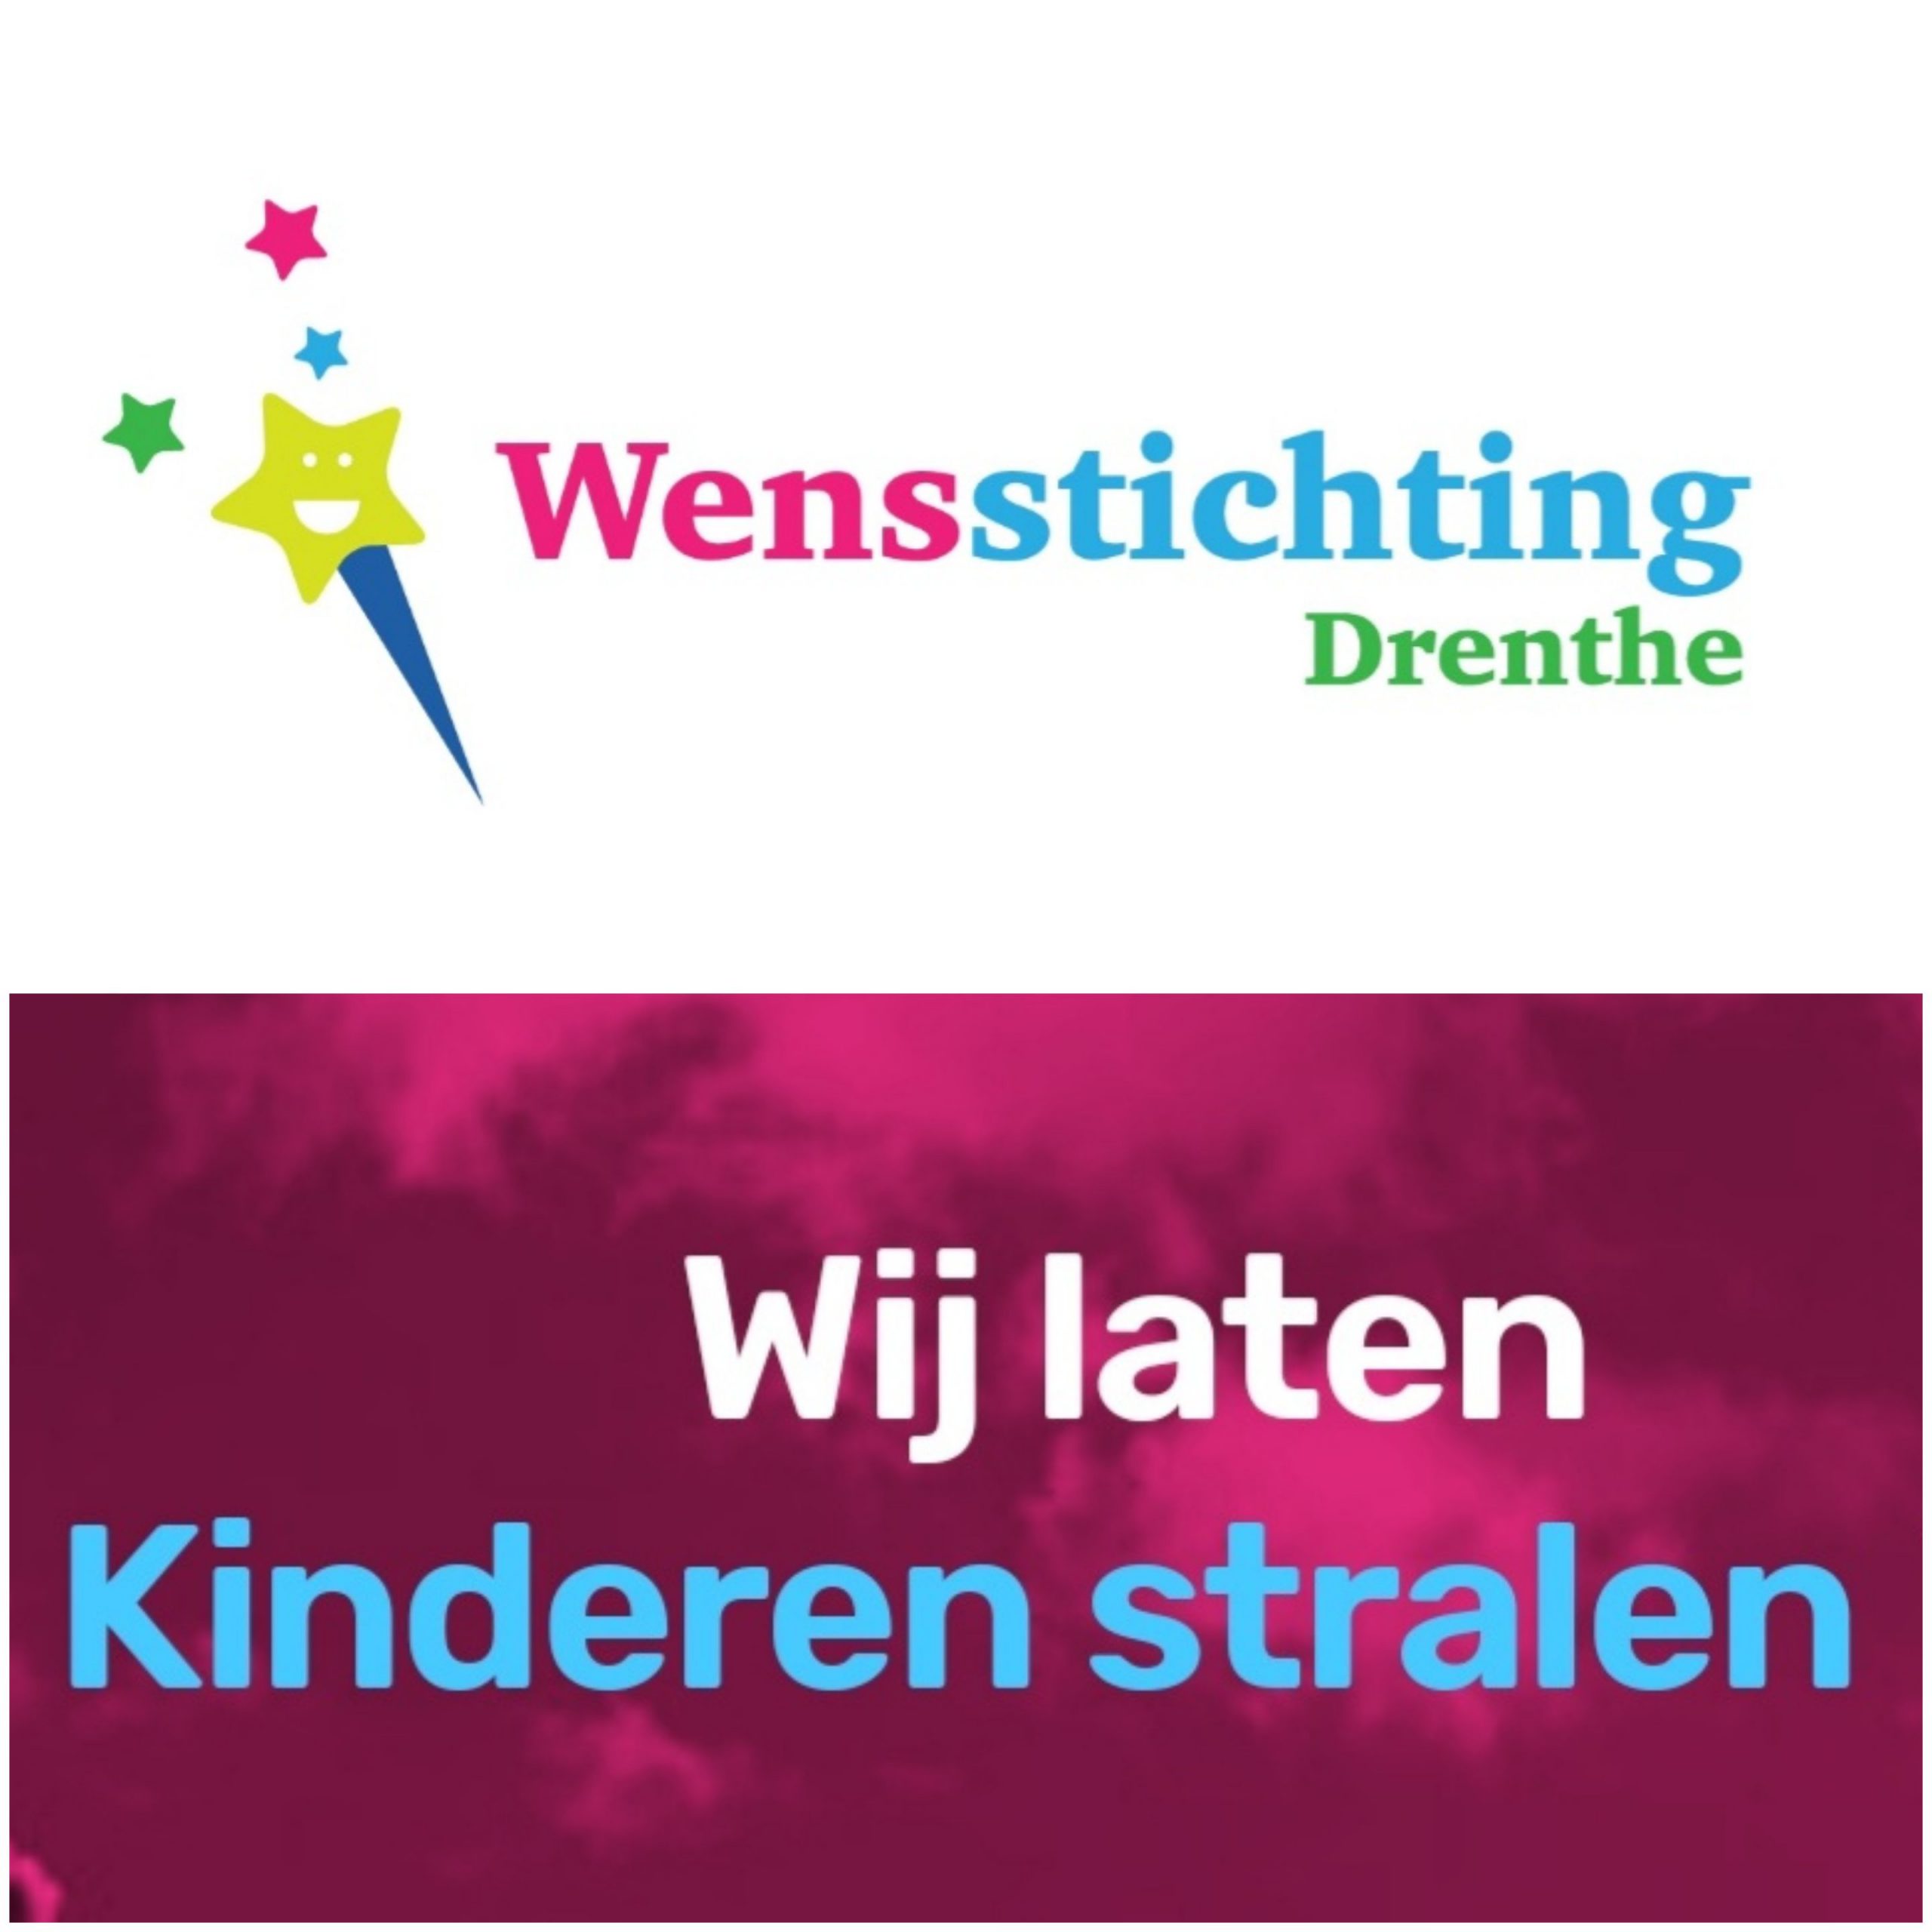 27-07: Wensstichting Drenthe in Continu in Bedrijf